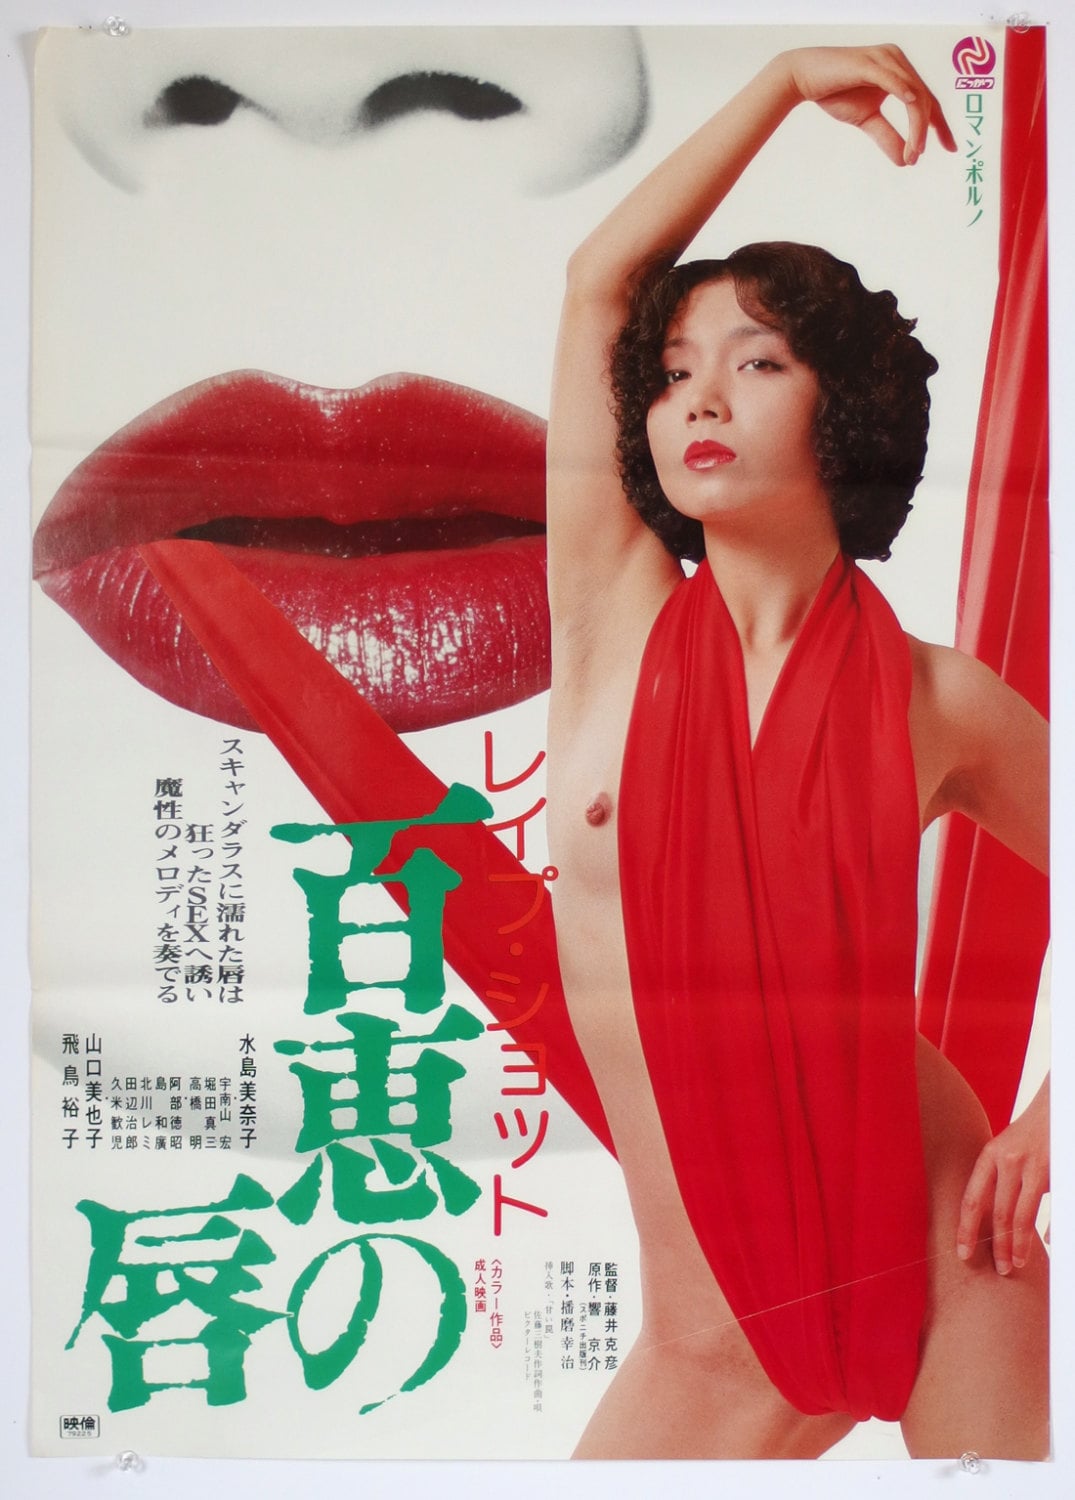 Adult Movie Poster. Japanese Hentai Movie Poster. Roman Porno. - Etsy